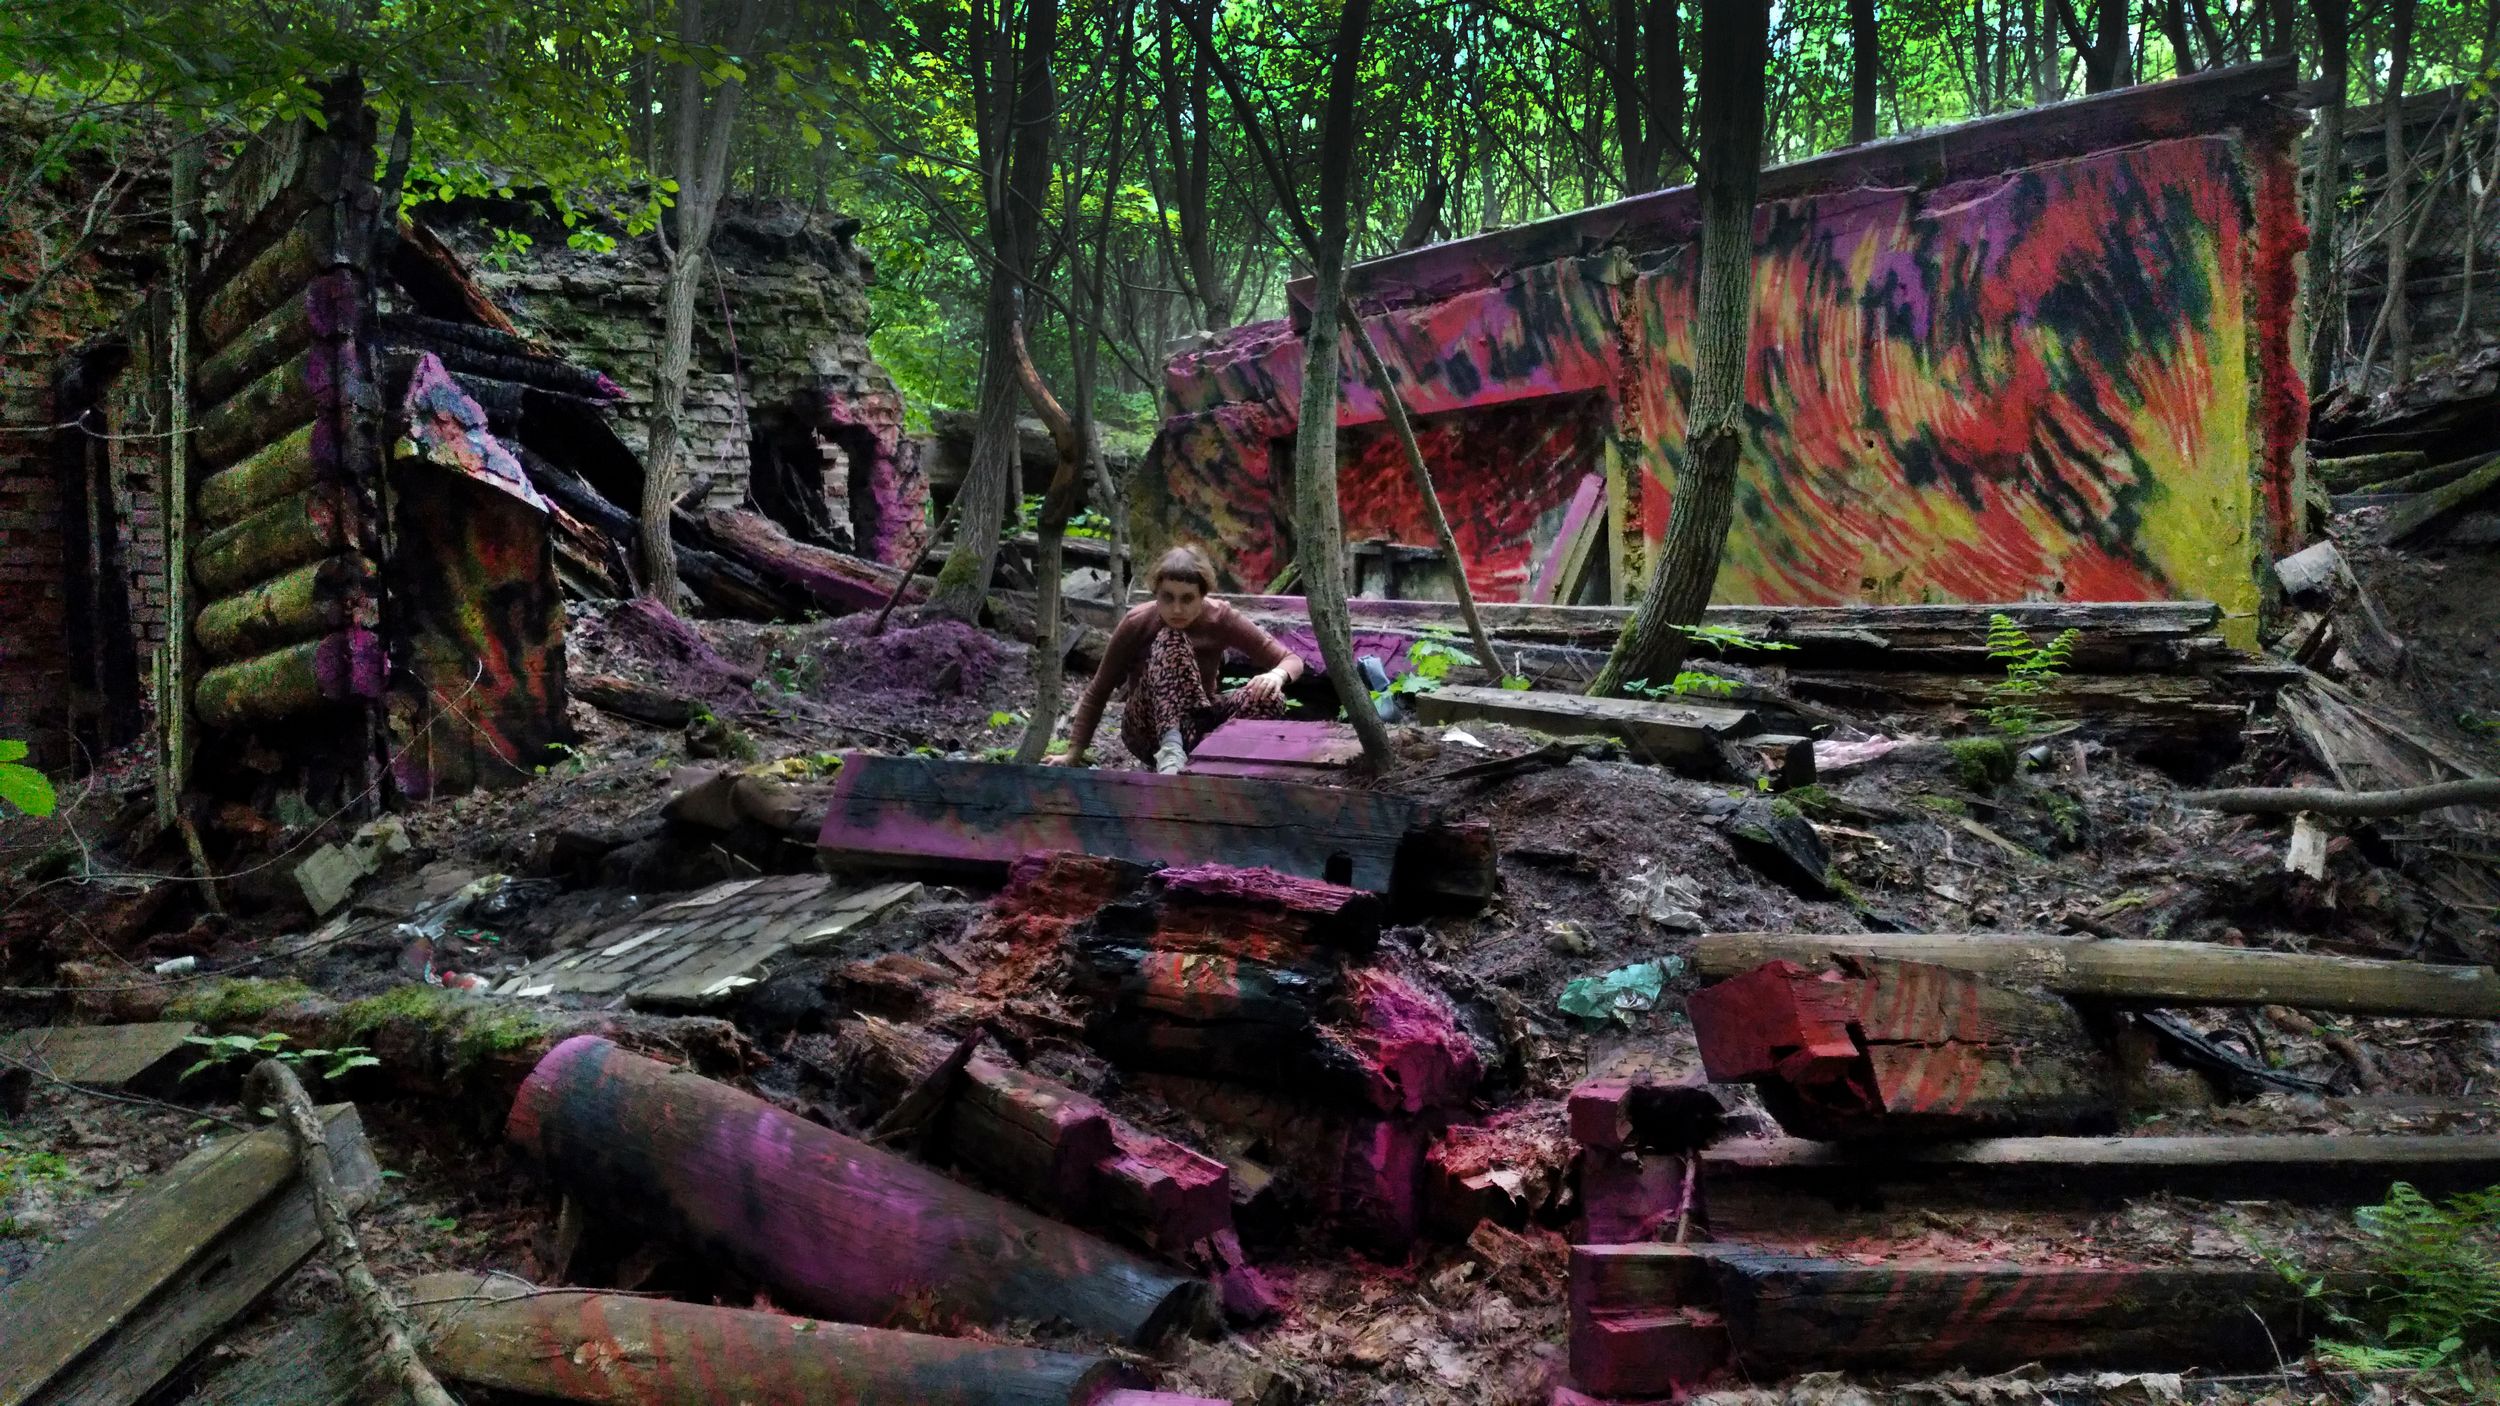 Фотография деревянных развалин в лесу, стены украшены яркими желто-красными пламевидными граффити, в центре на корточках сидит девушка